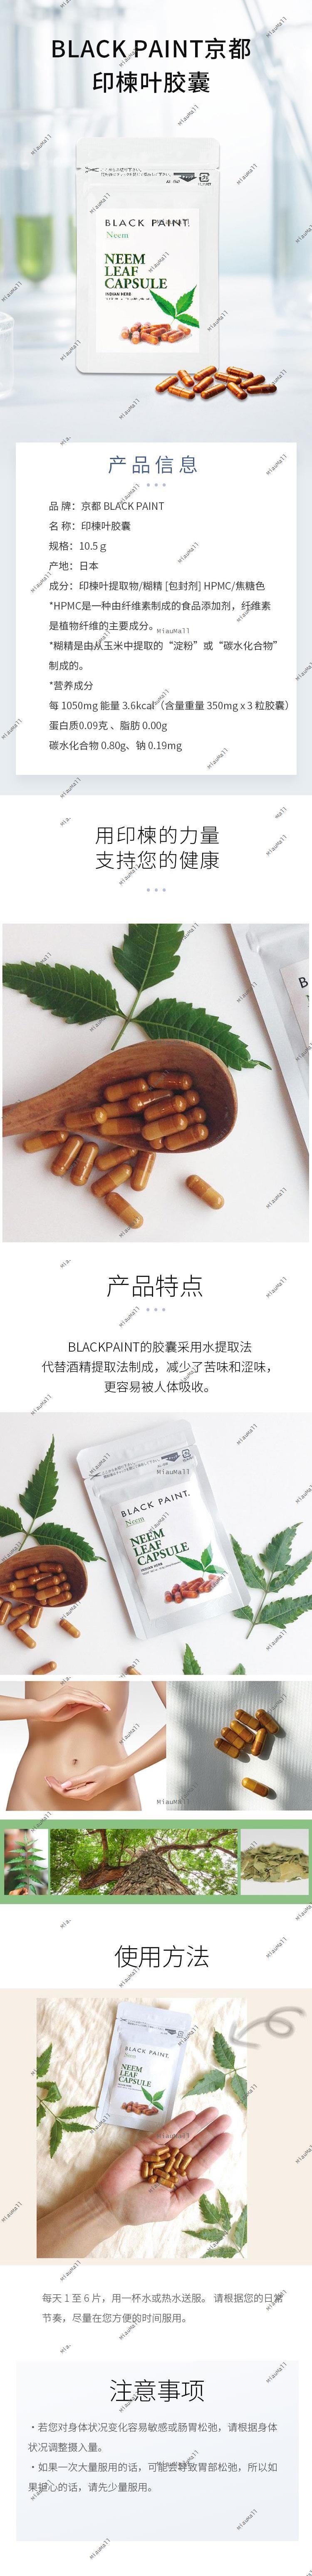 【日本直郵】日本小眾品牌BLACK PAINT京都 NEEM LEAF CAPSULE 印楝葉膠囊 30粒